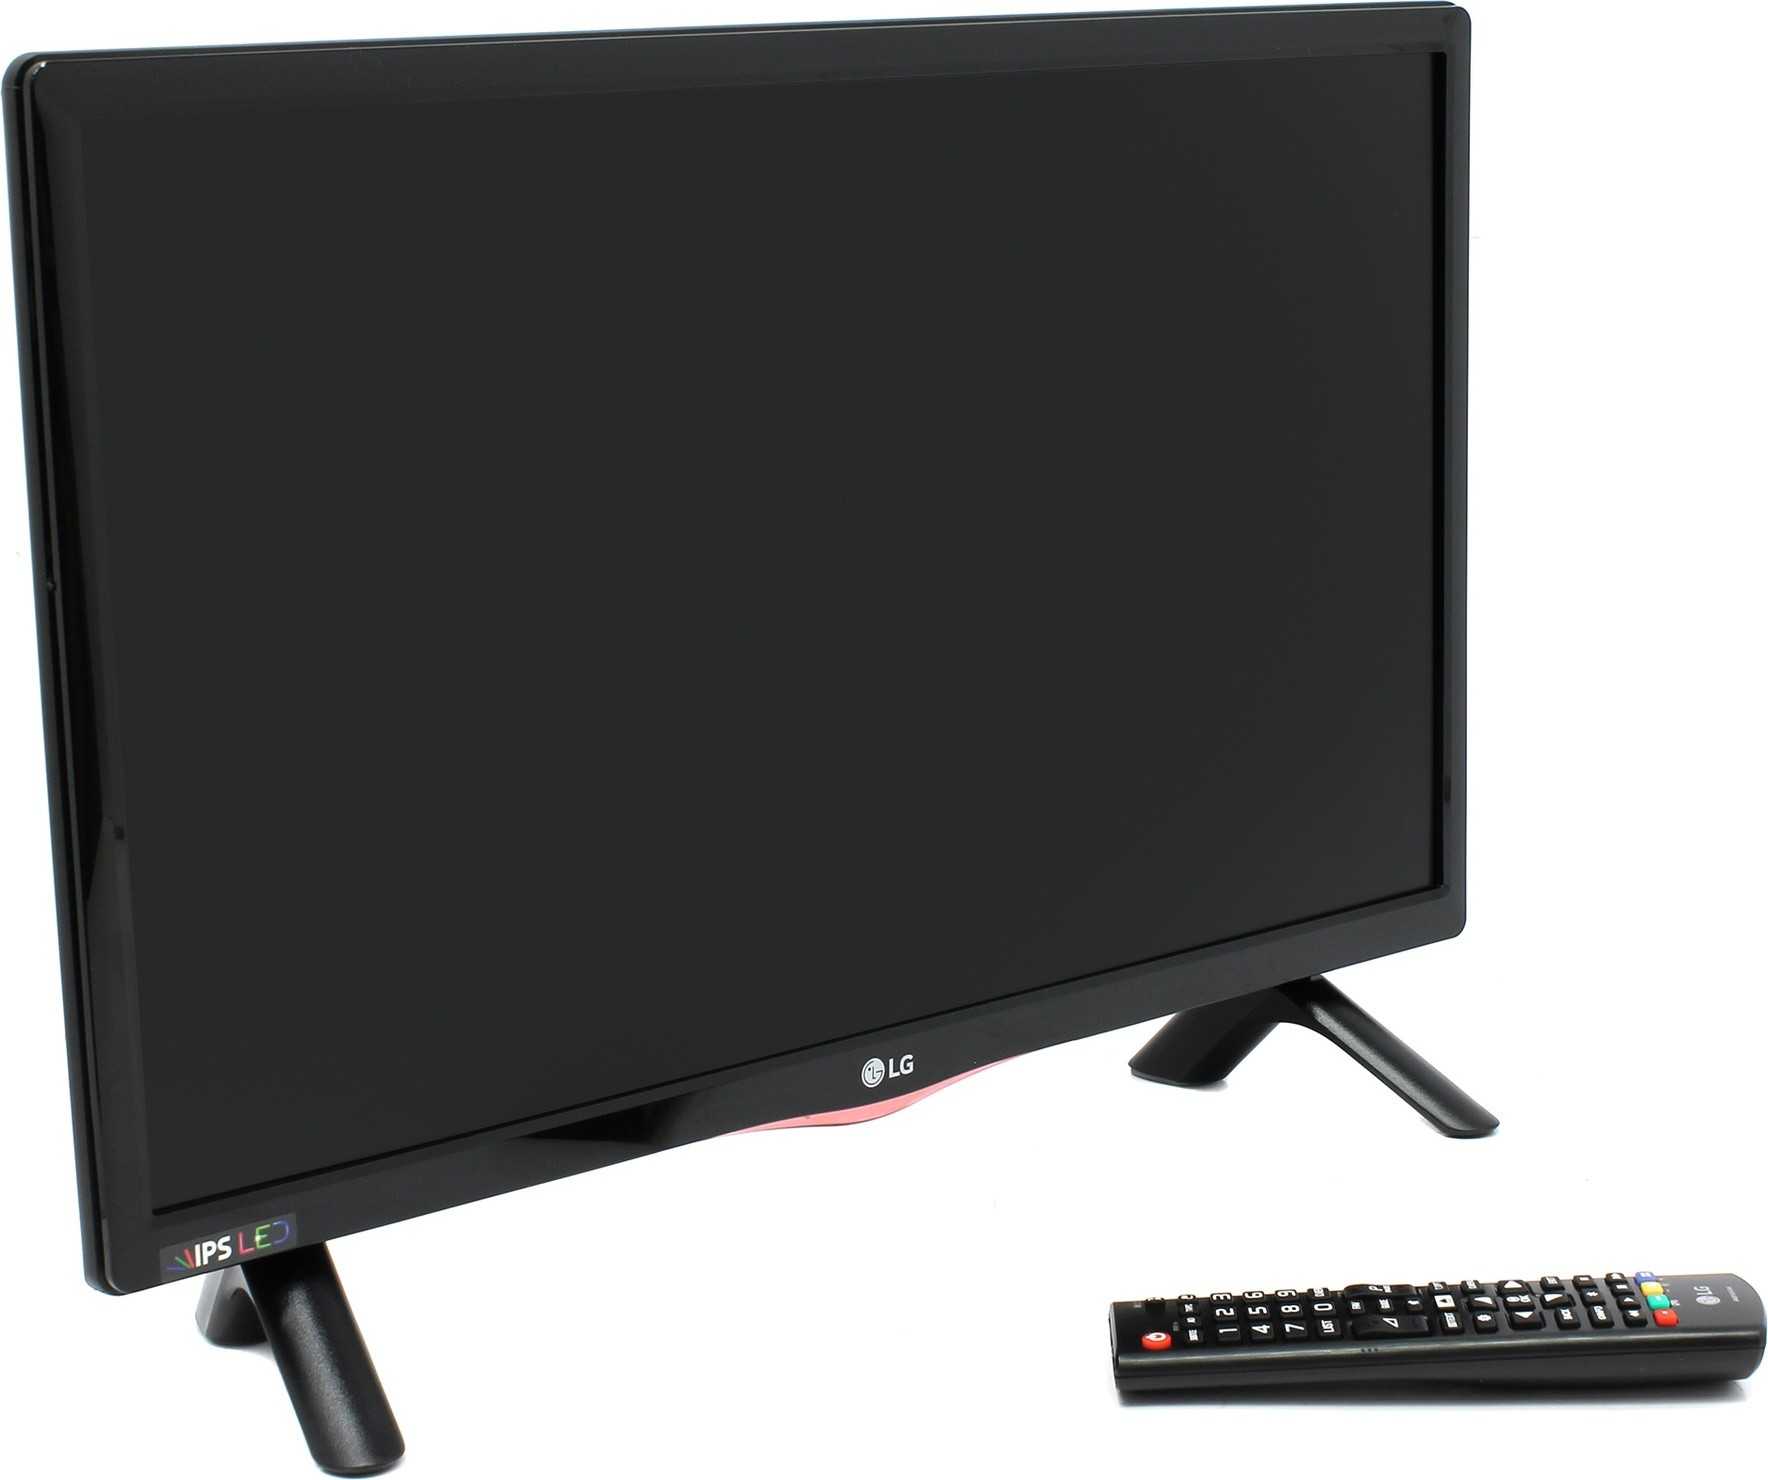 Led телевизор lg 22lh450v-pz (черный) купить от 9990 руб в челябинске, сравнить цены, отзывы, видео обзоры и характеристики